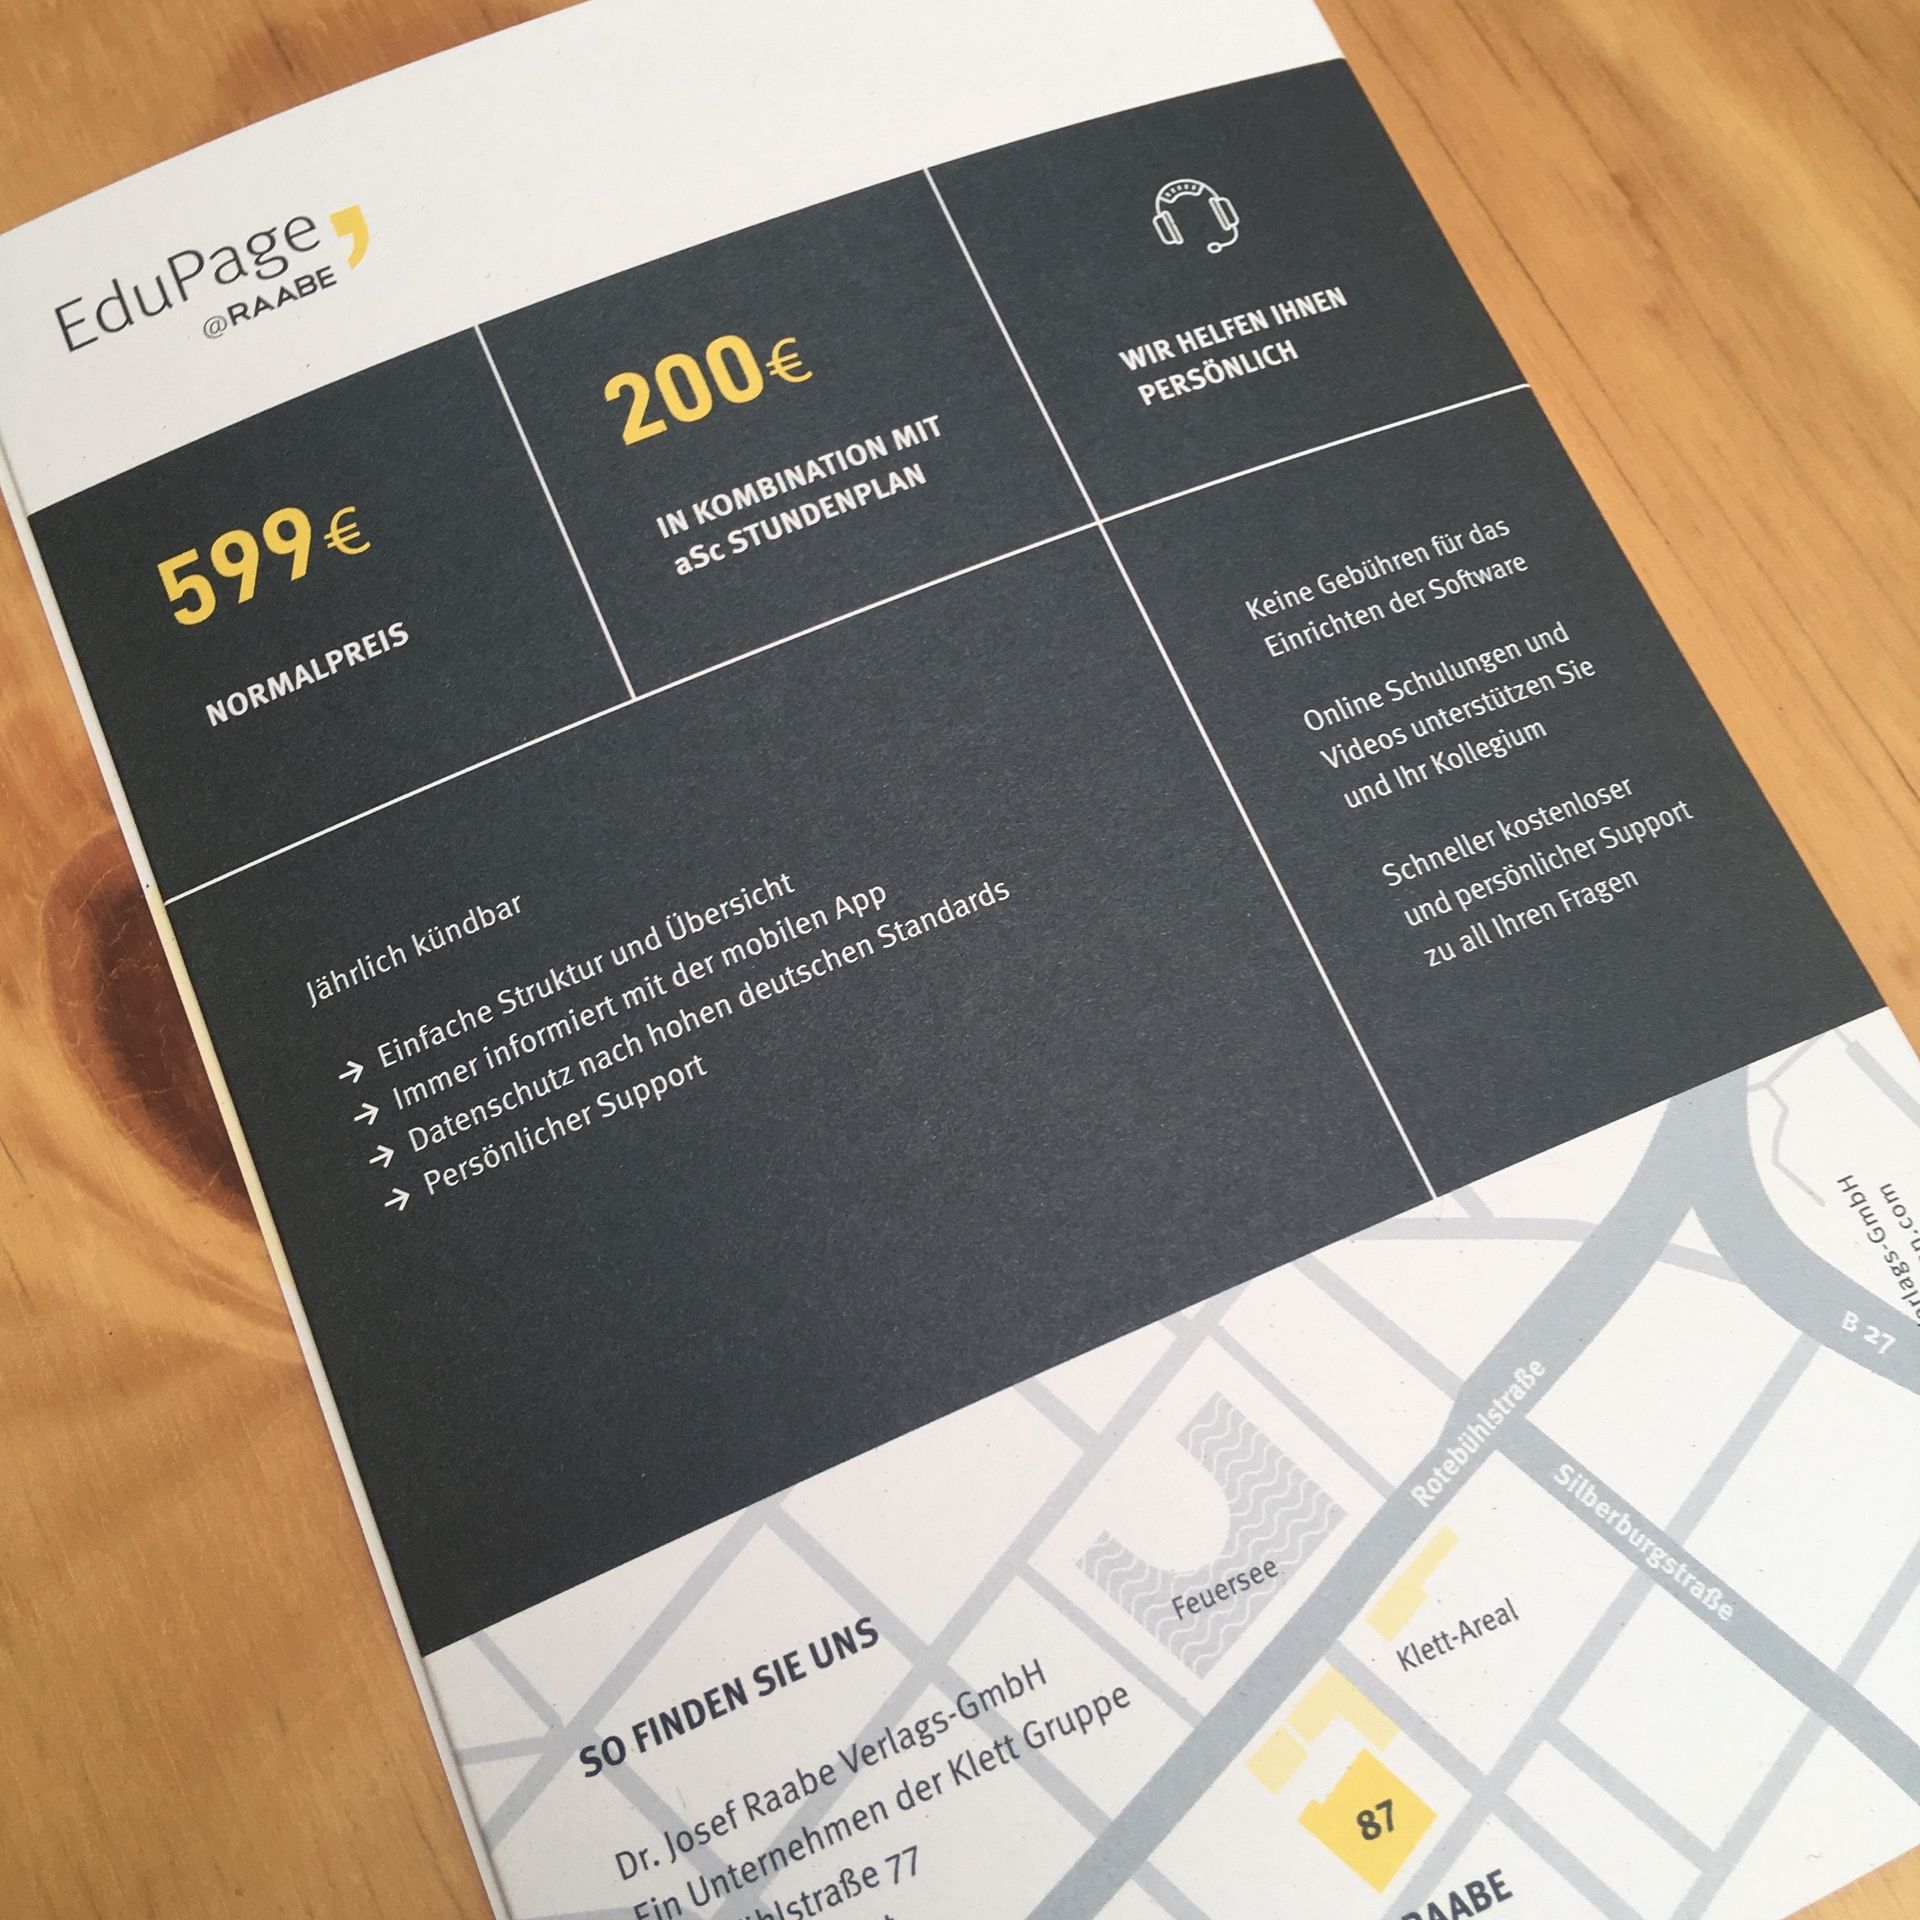 EduPage-Flyer Rückseite in Anthrazit mit den Infos über Preise und Kontaktdaten.